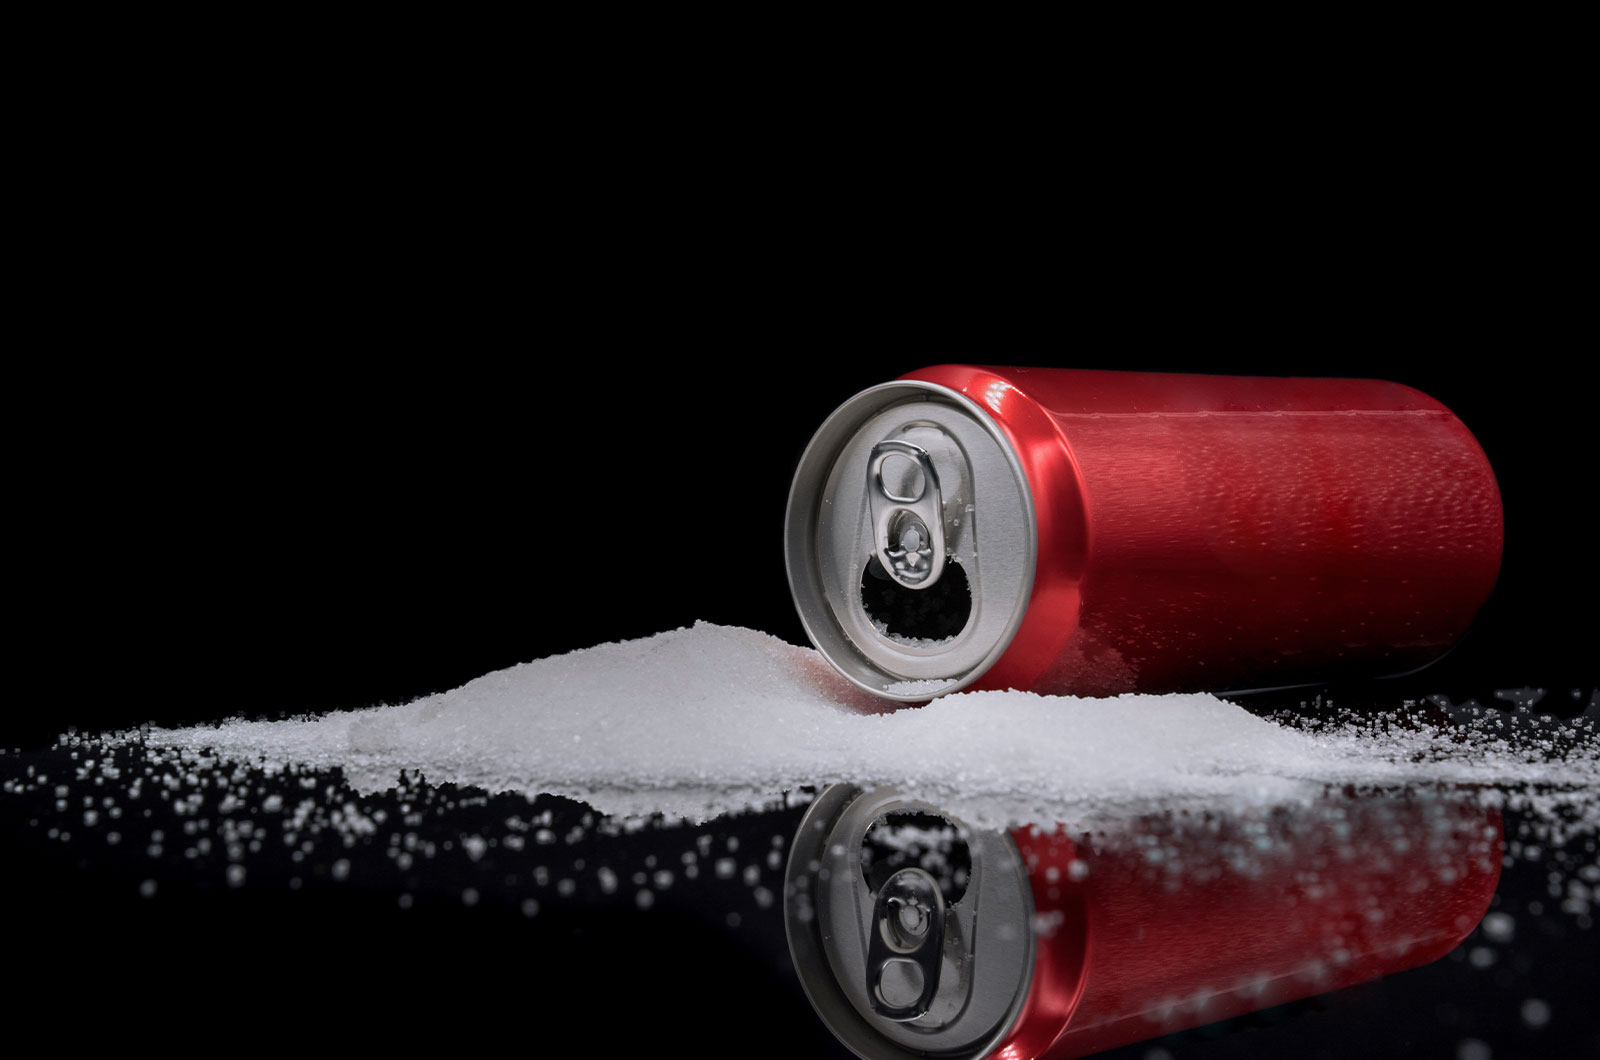 ungesundes Ernährungskonzept, die Gefahren von zuviel Zucker in kohlensäurehaltigen Getränken, beispielsweise in Cola